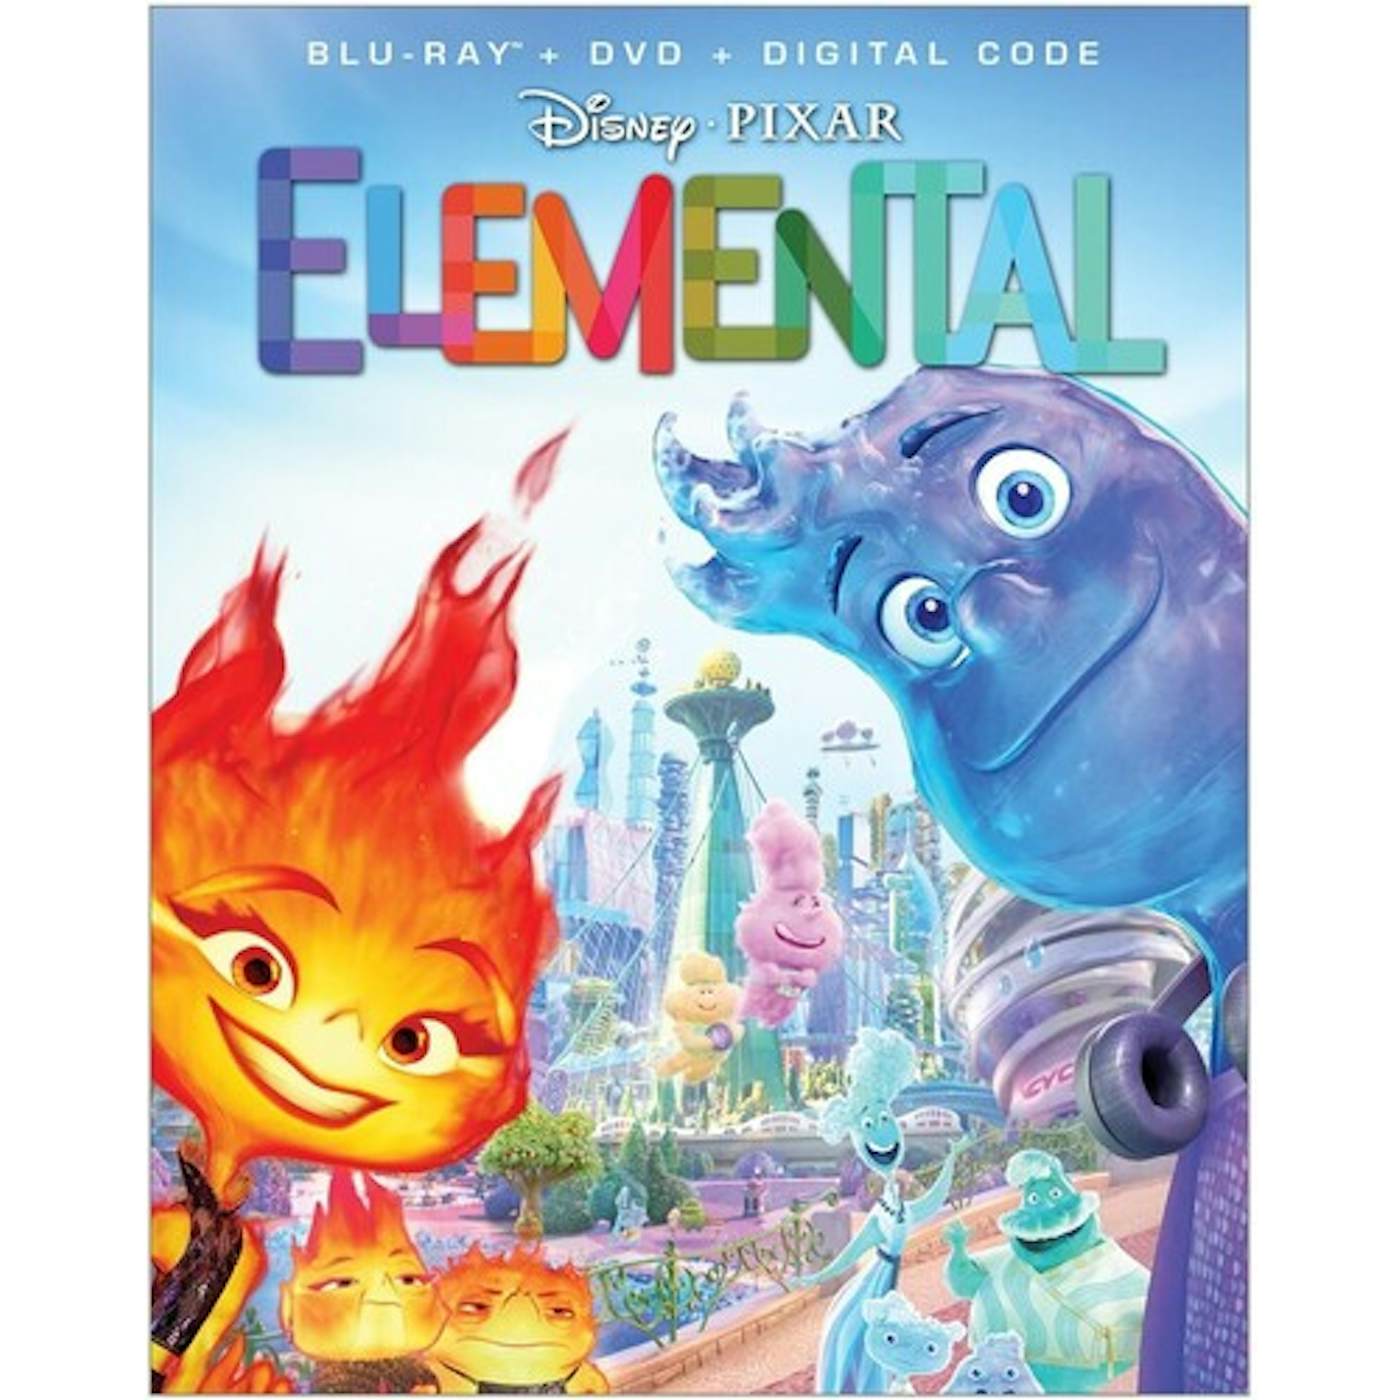 ELEMENTAL Blu-ray